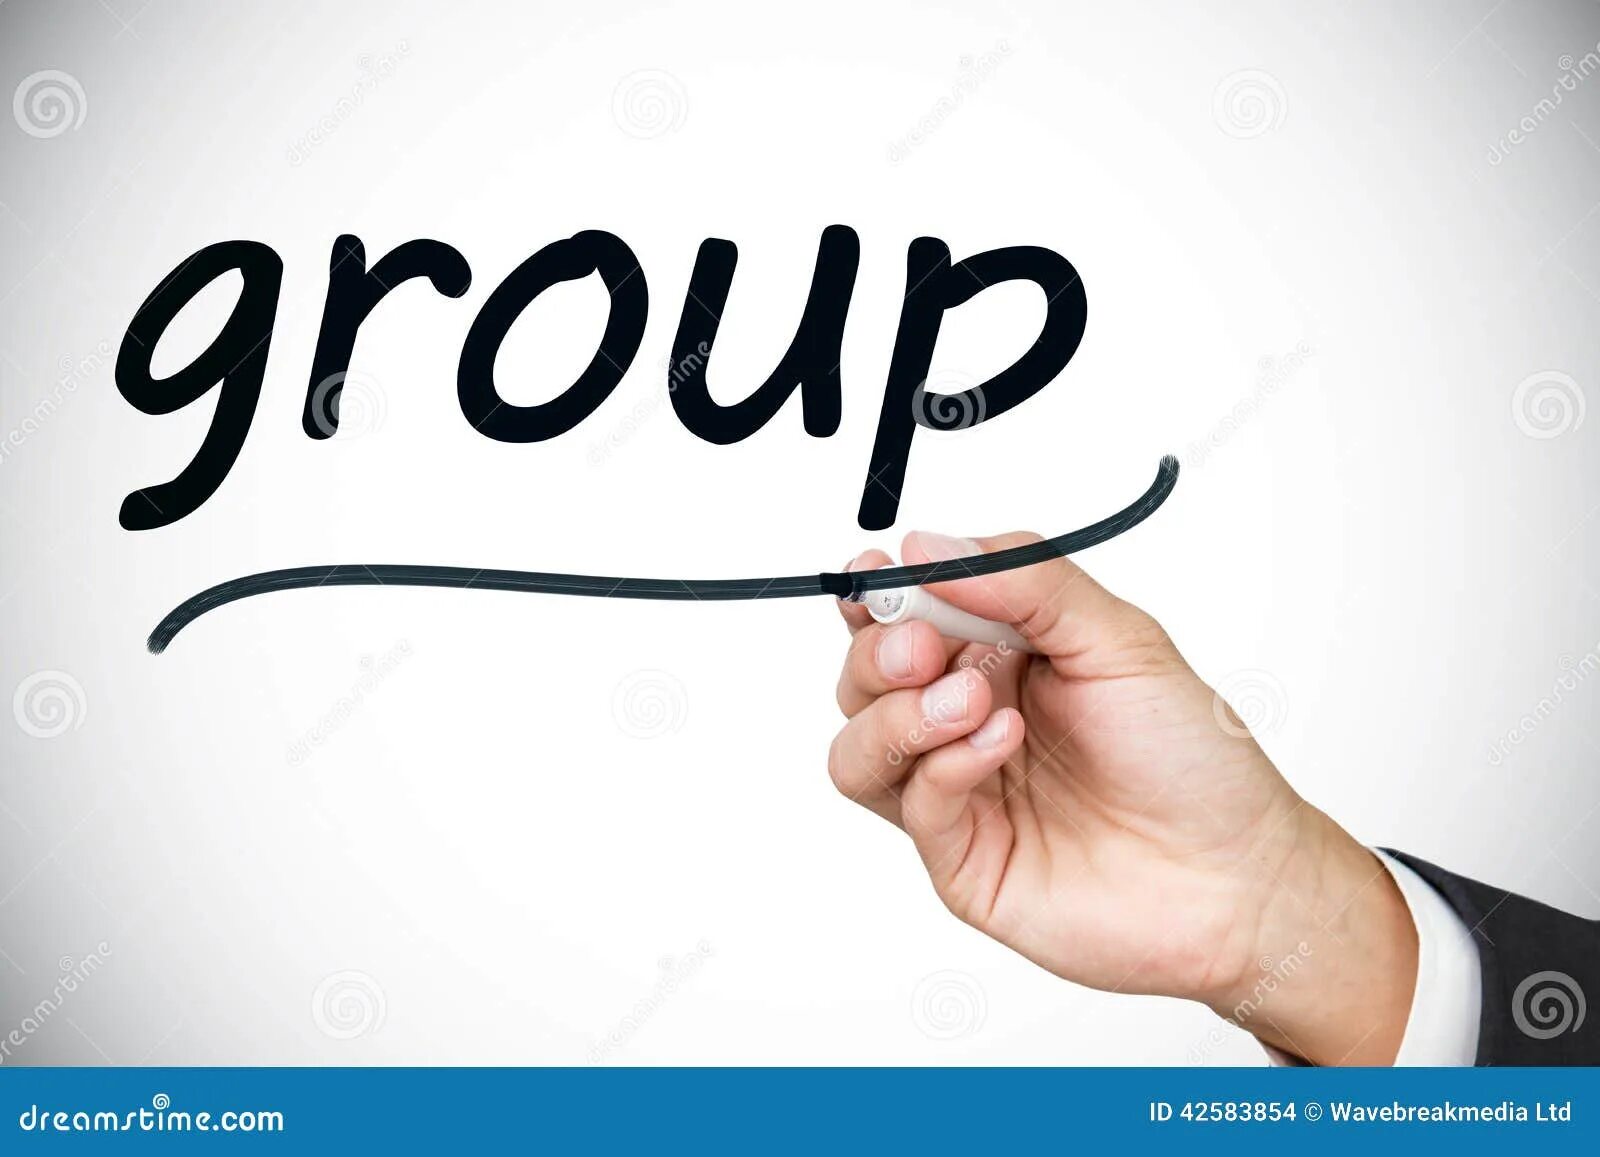 Груп текст. Group слово. Слово группа на белом фоне. Слово группа картинка. Бизнесмен слово картинка.